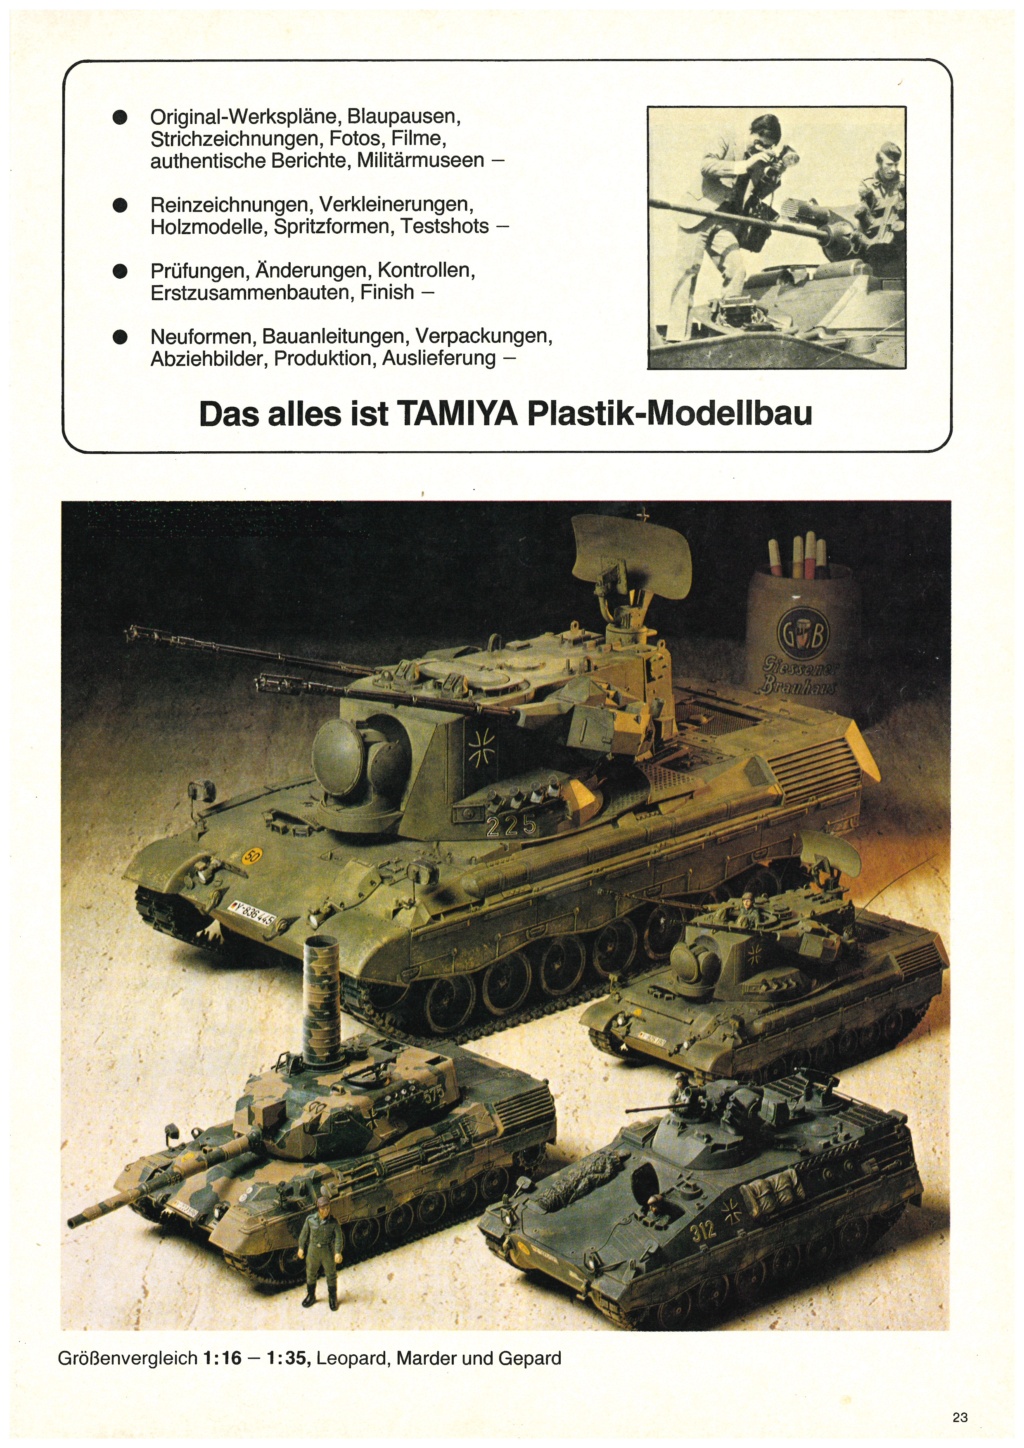 [TAMIYA HEINZ BEHRINGER 1982] Catalogue allemand importateur HEINZ BEHRINGER 1982 Tami3281